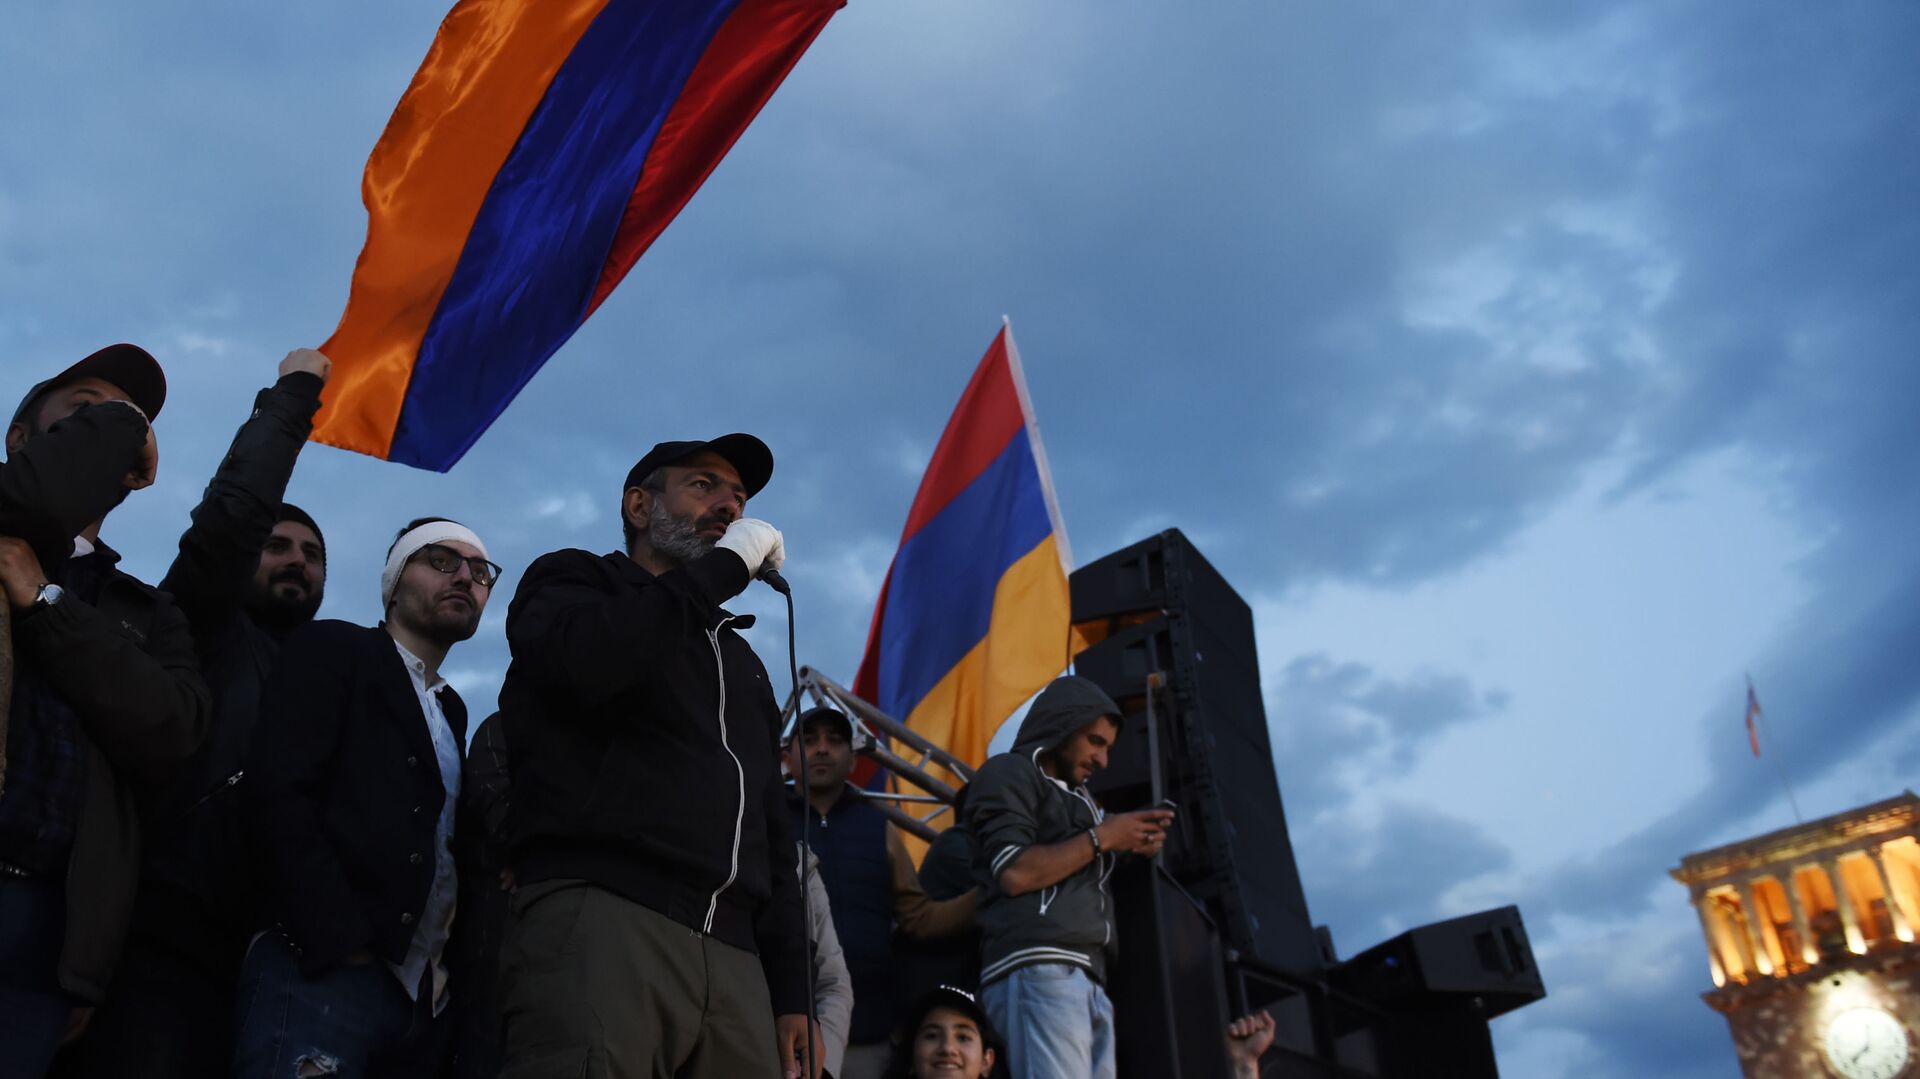 زعيم المعارضة الأرمينية، نيكولا باشنيان في يريفان، أرمينيا 23 أبريل/ نيسان 2018 - سبوتنيك عربي, 1920, 14.04.2021